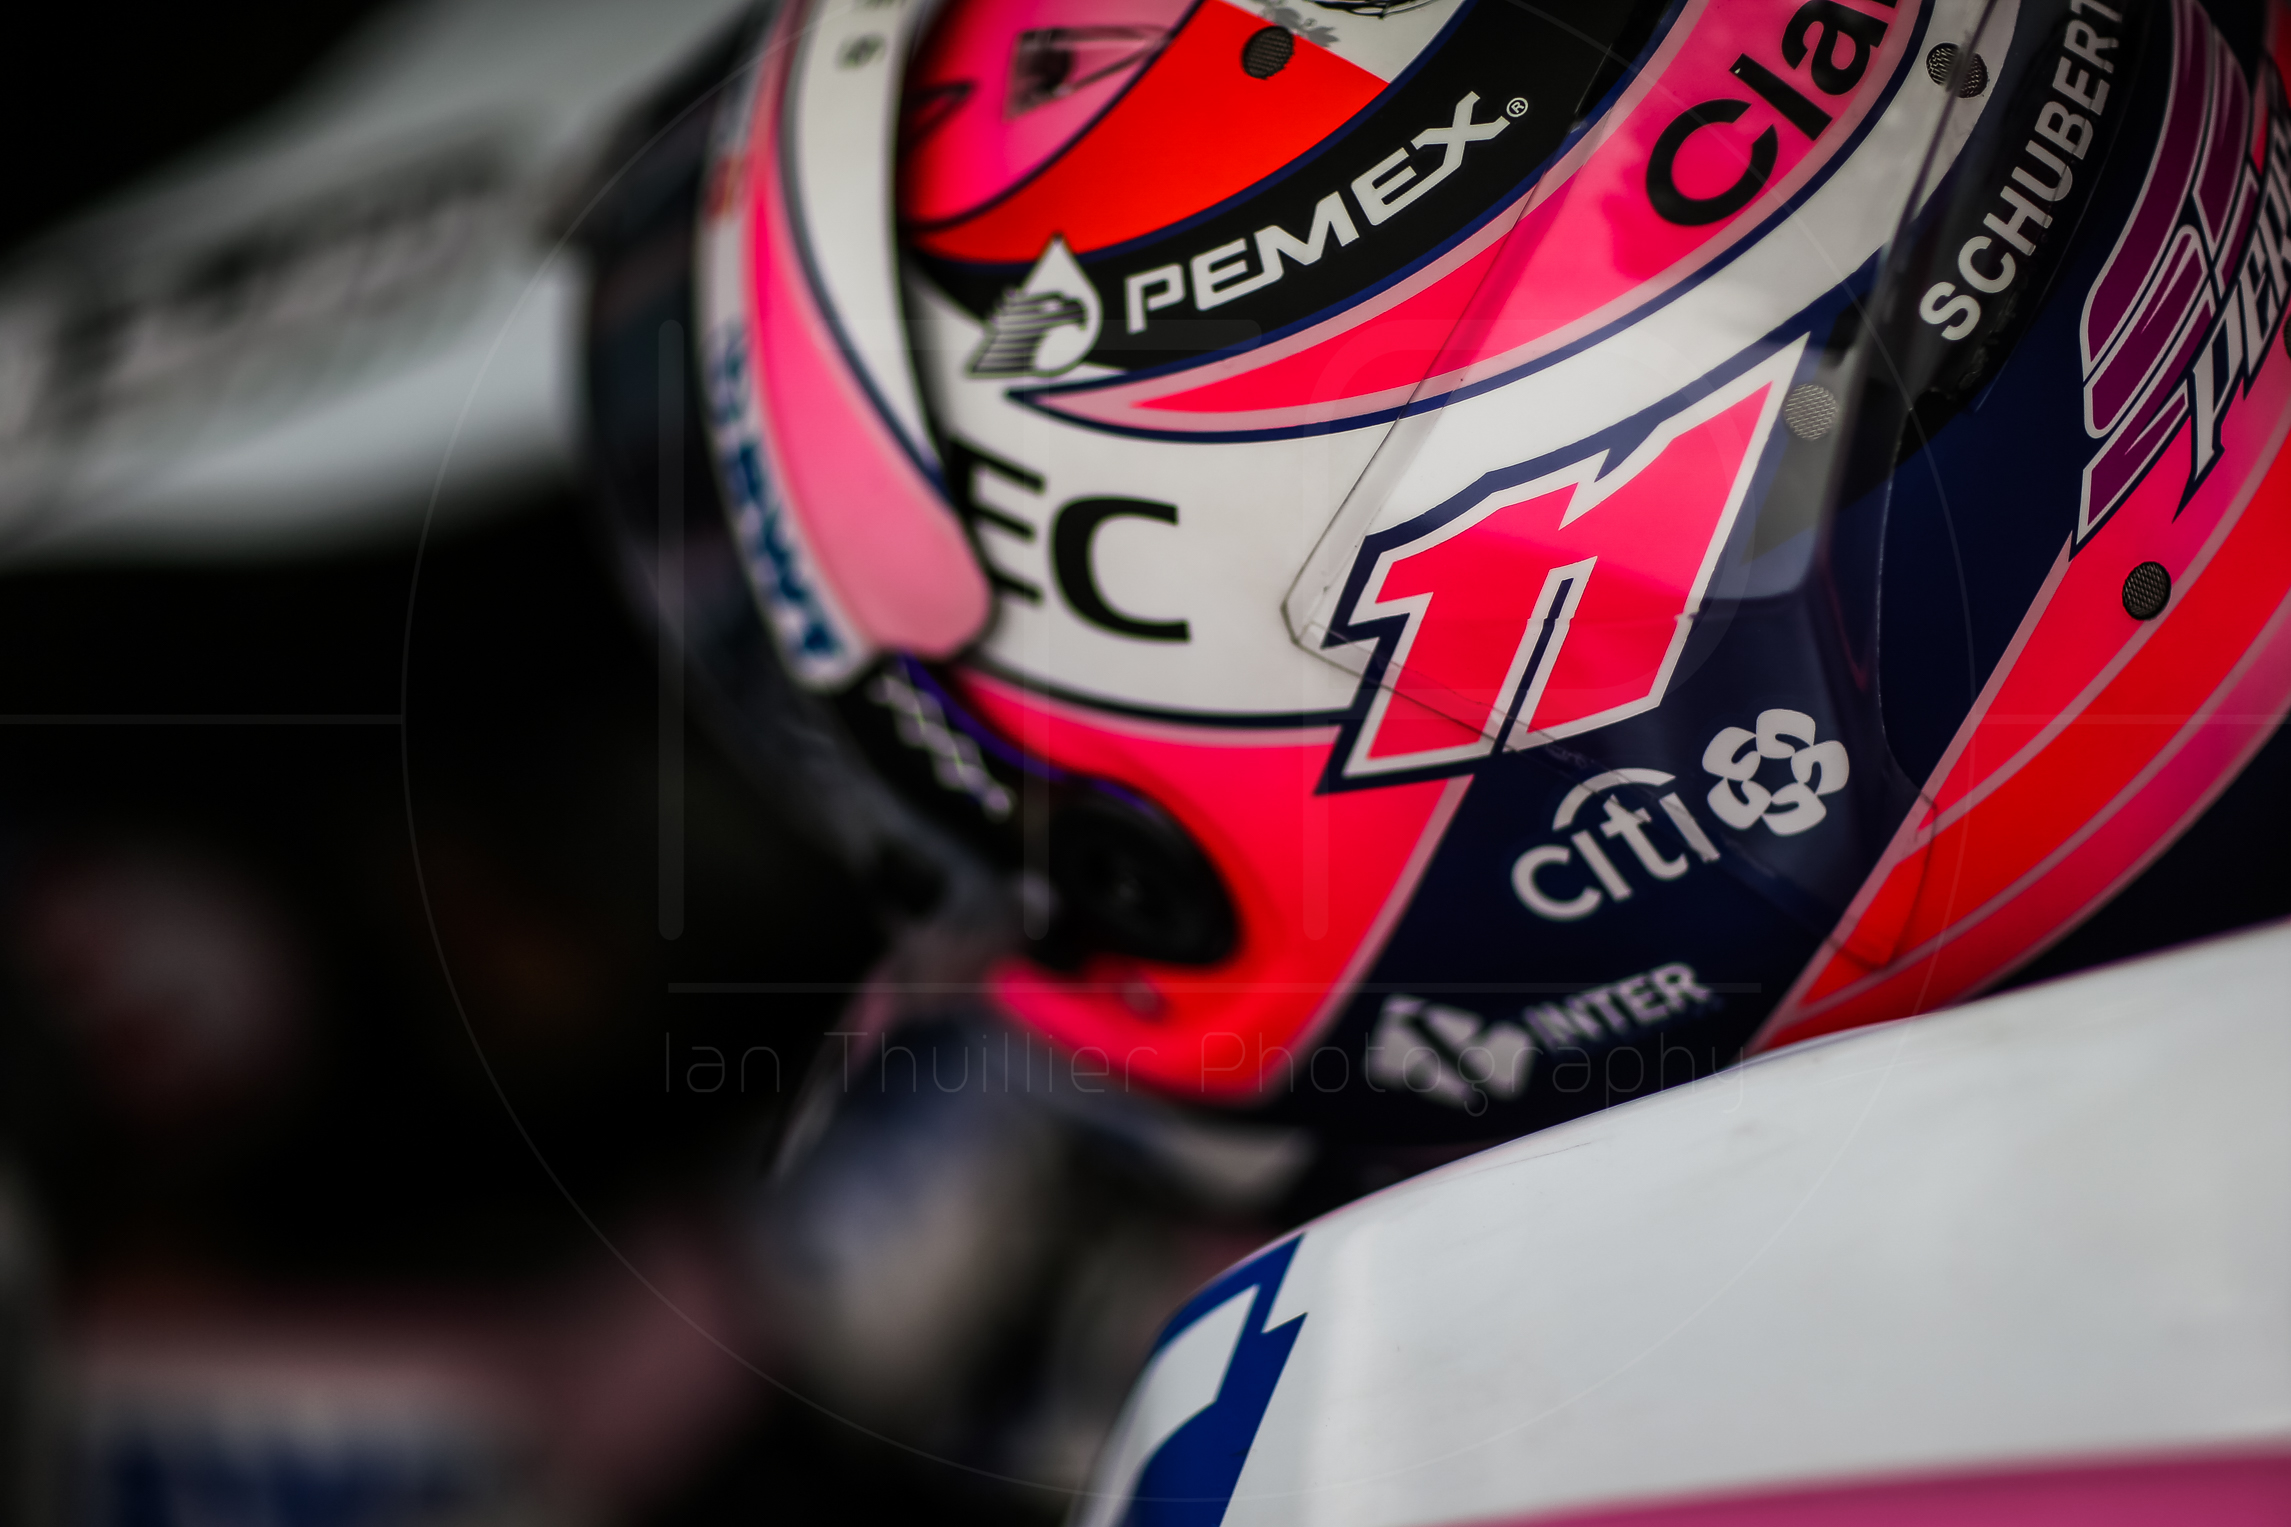 Formula 1 2018: Monaco Grand Prix by Ian Thuillier. 